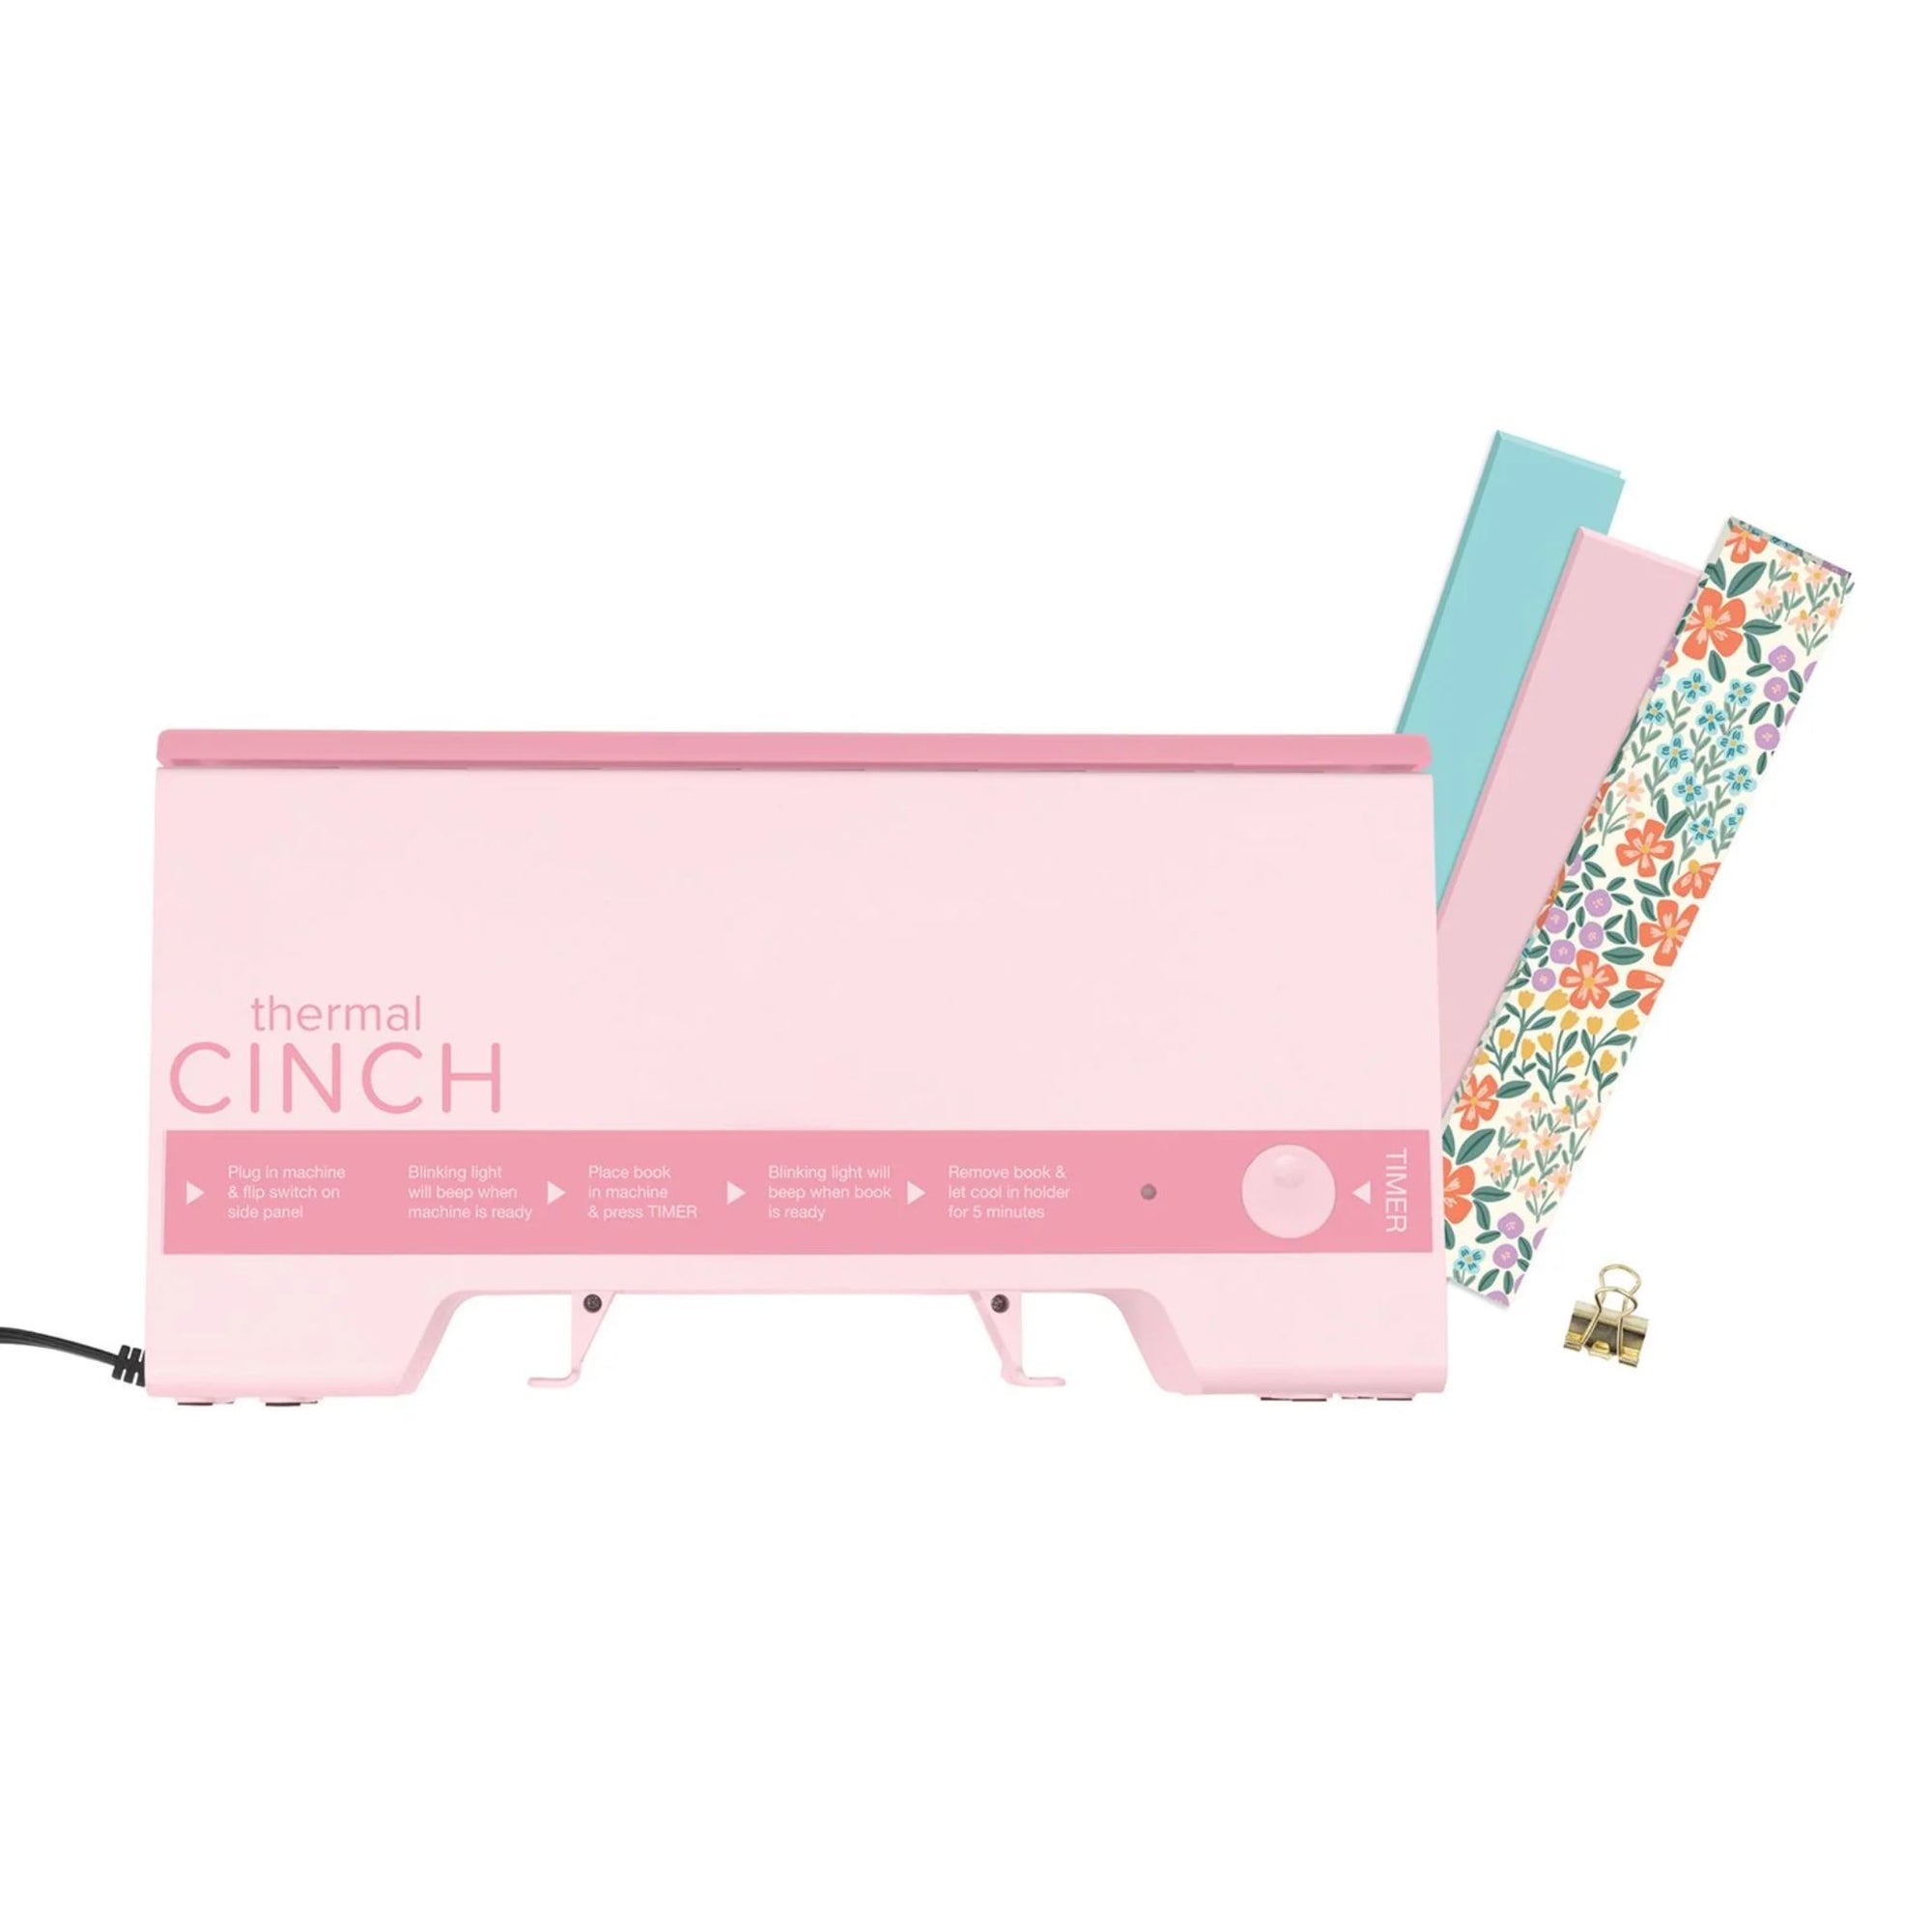 Thermal Cinch Pink Binding Machine / Máquina de Encuadernación Térmica Color Rosa